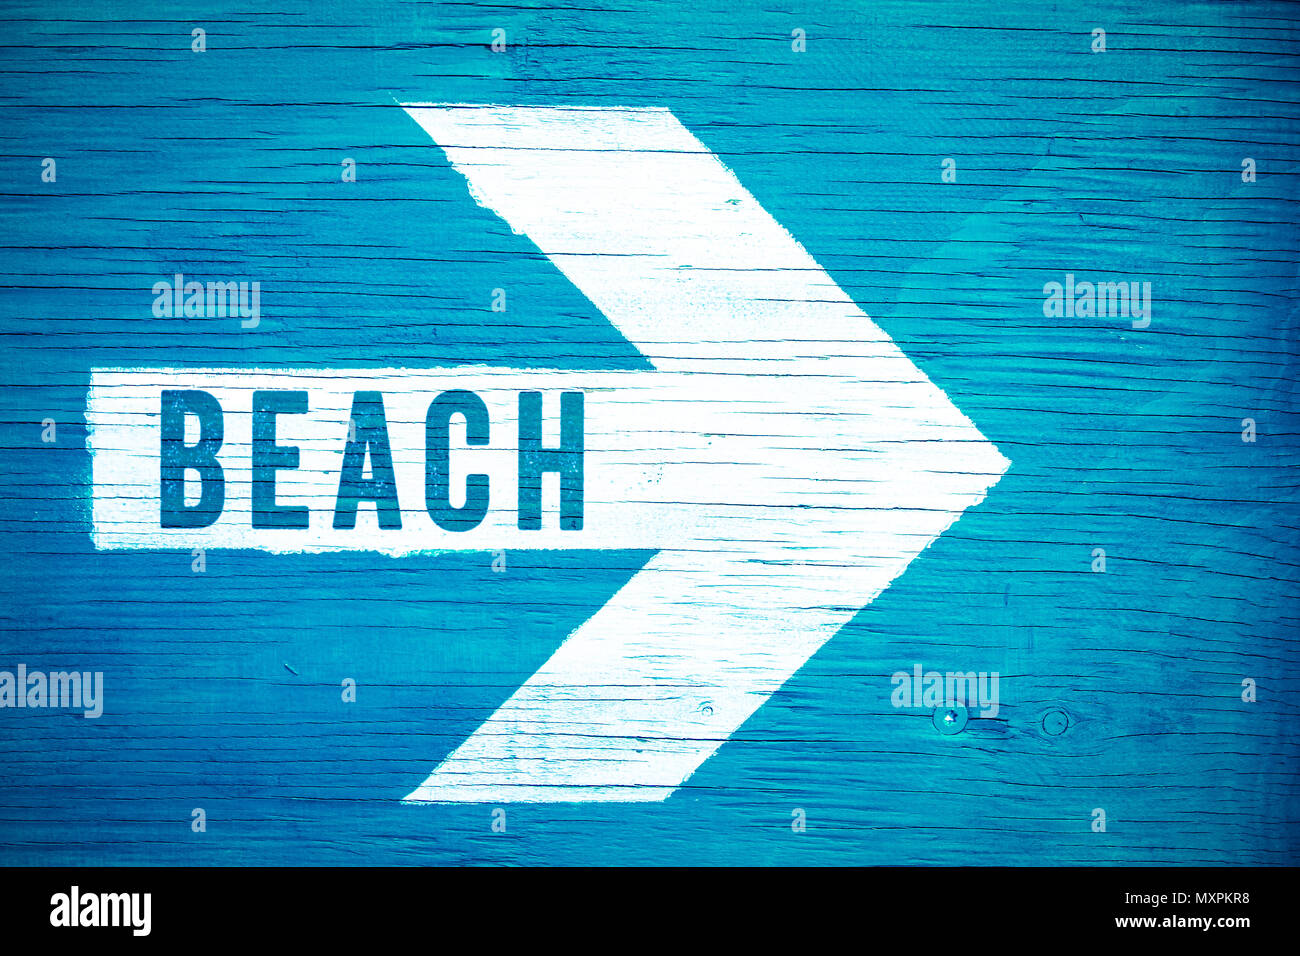 Strand text Zeichen auf einem weißen Pfeil, dessen Spitze nach rechts manuell auf einem blauen Schild aus Holz bemalt geschrieben. Konzept für heiße Sommer, tropi Stockfoto